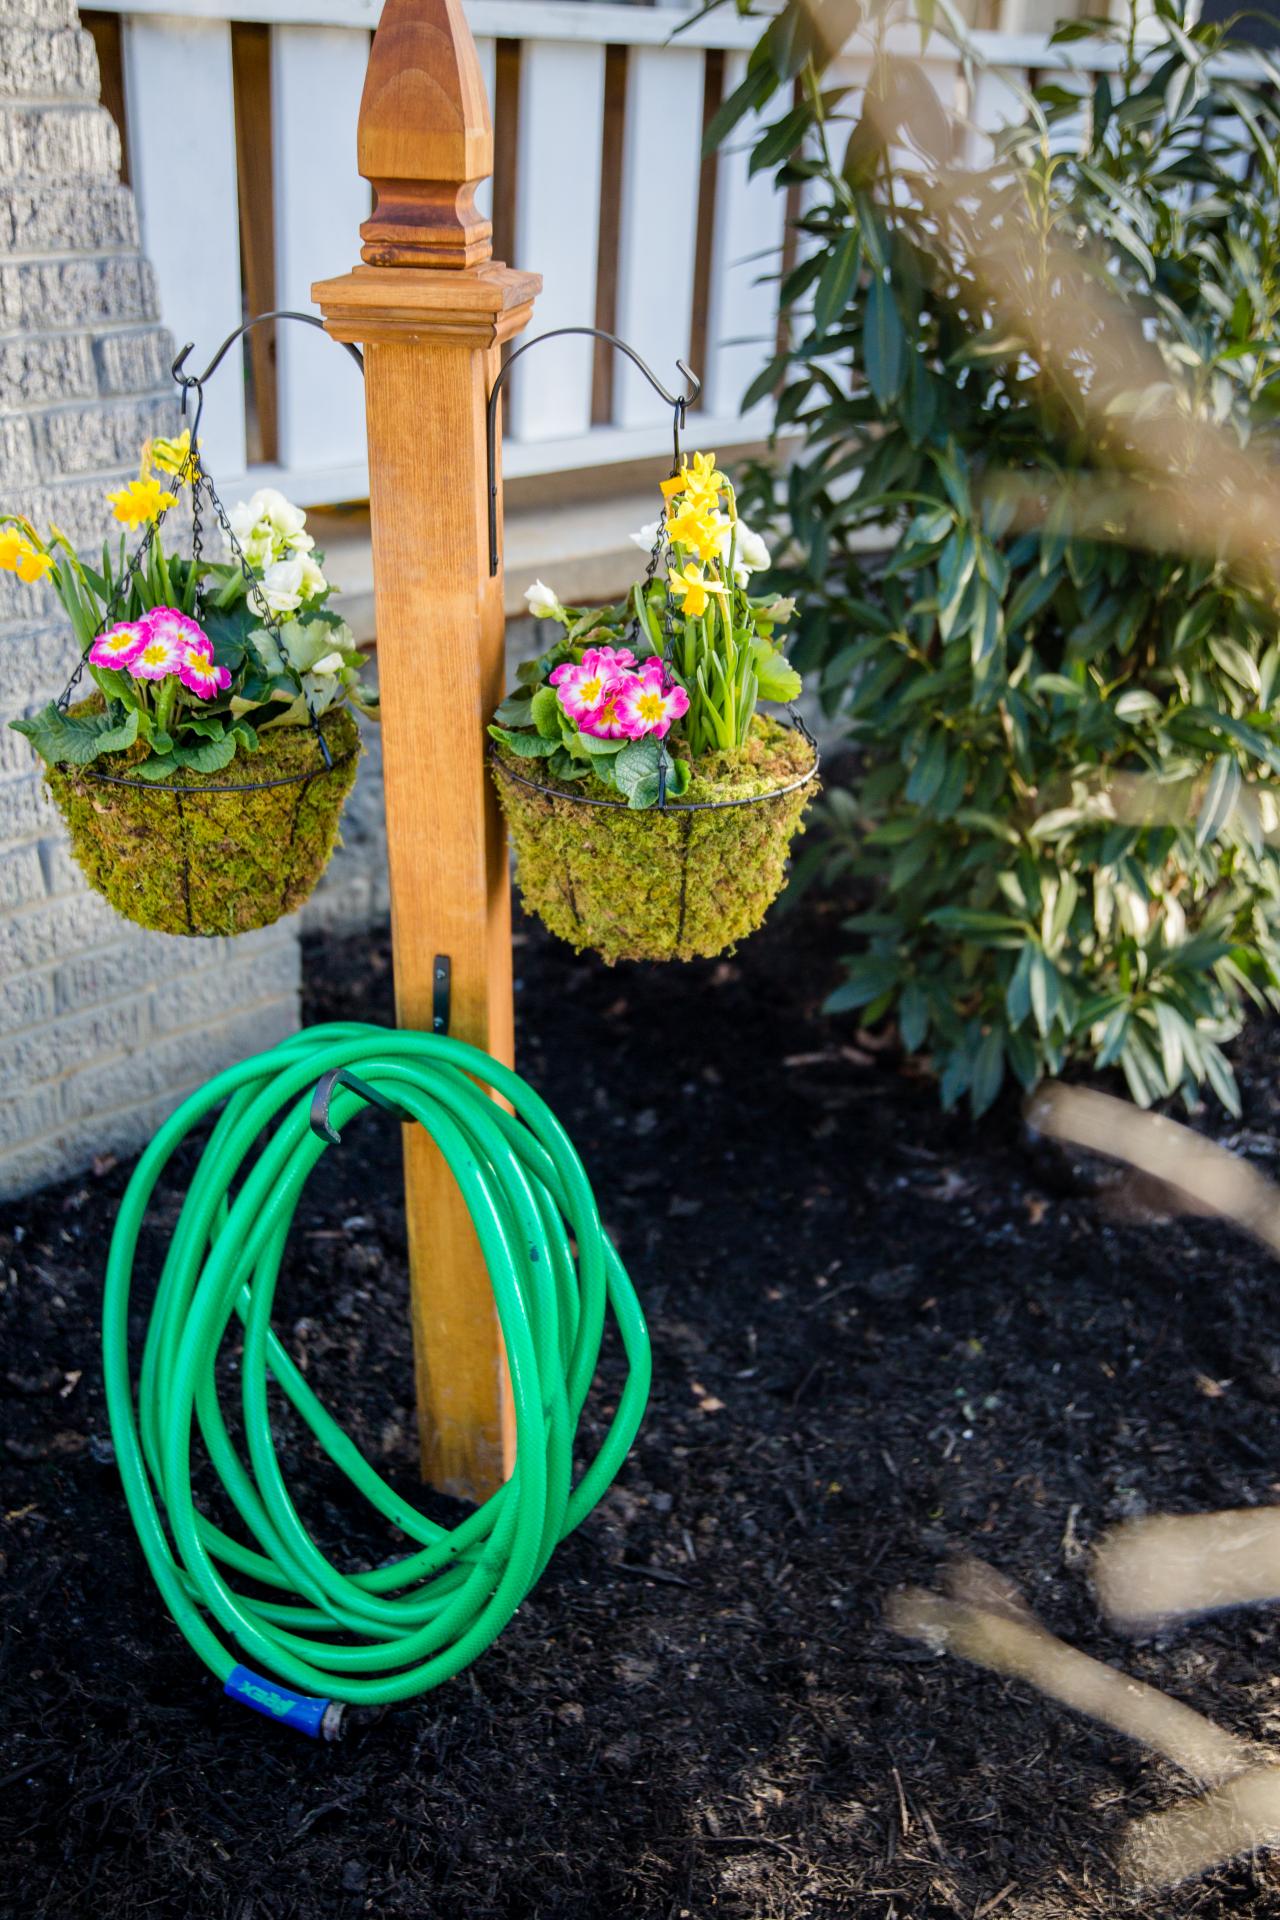 DIY Garden Hose Storage With Plant Hangers | HGTV